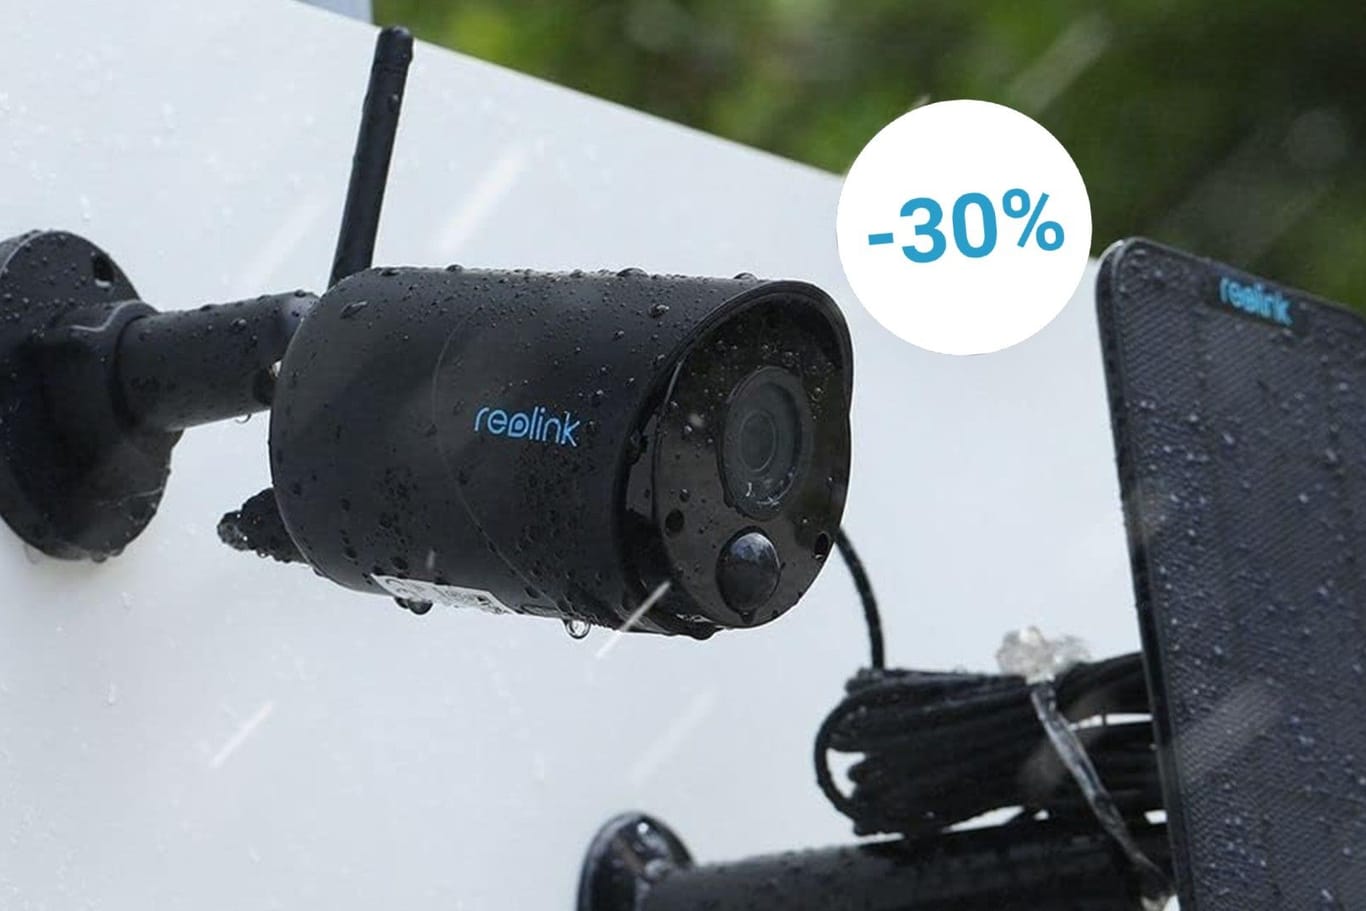 Umweltfreundlich und ohne Stromkosten: Bei Amazon gibt es die Solar-Überwachungskamera von Reolink zum Tiefpreis.